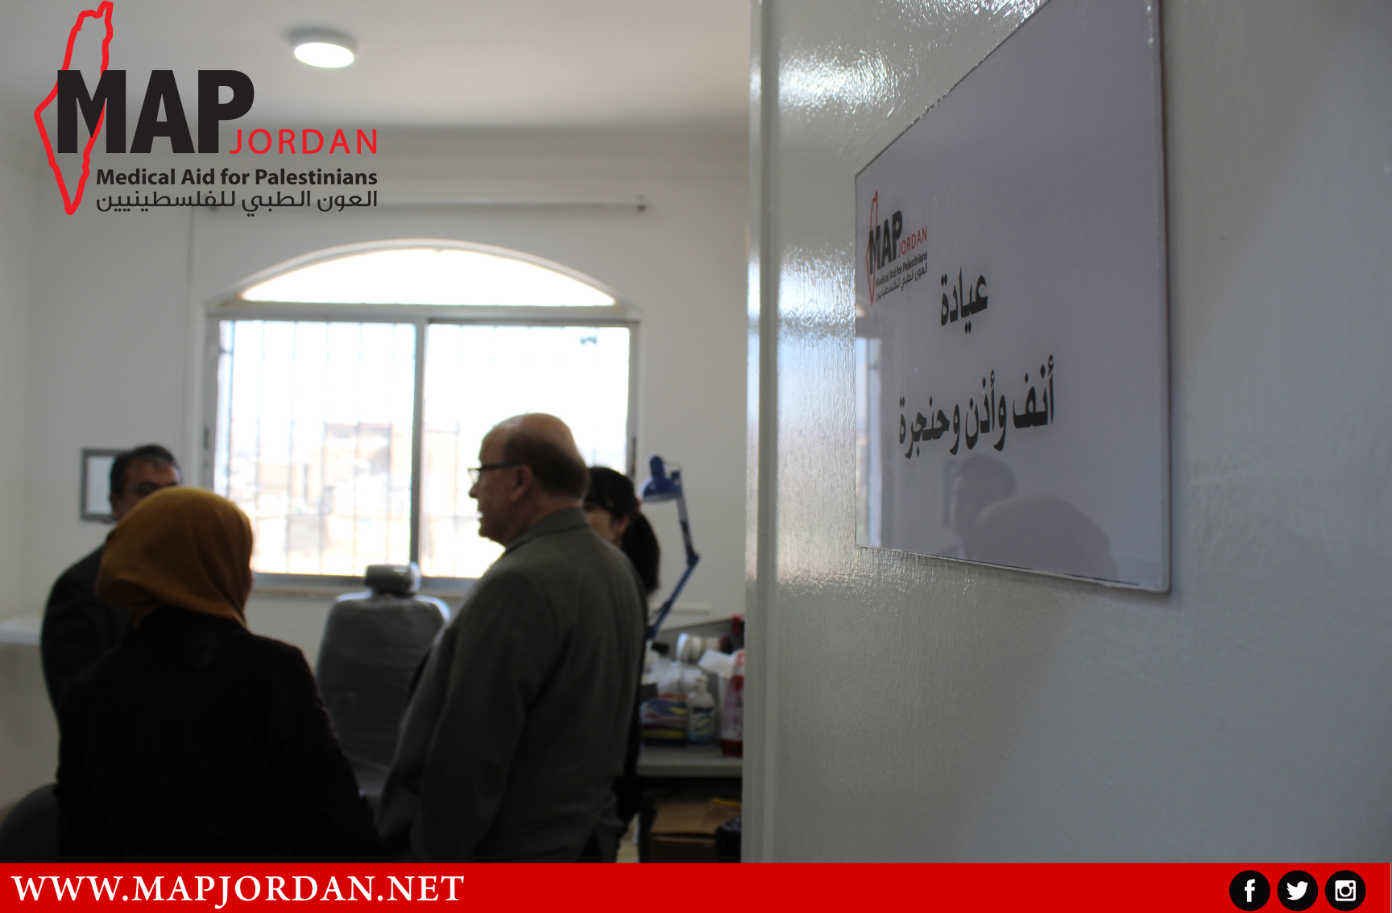 Japan Handover Medical Equipment To Jordan Medical Aid for Palestinians (MAP Jordan) 